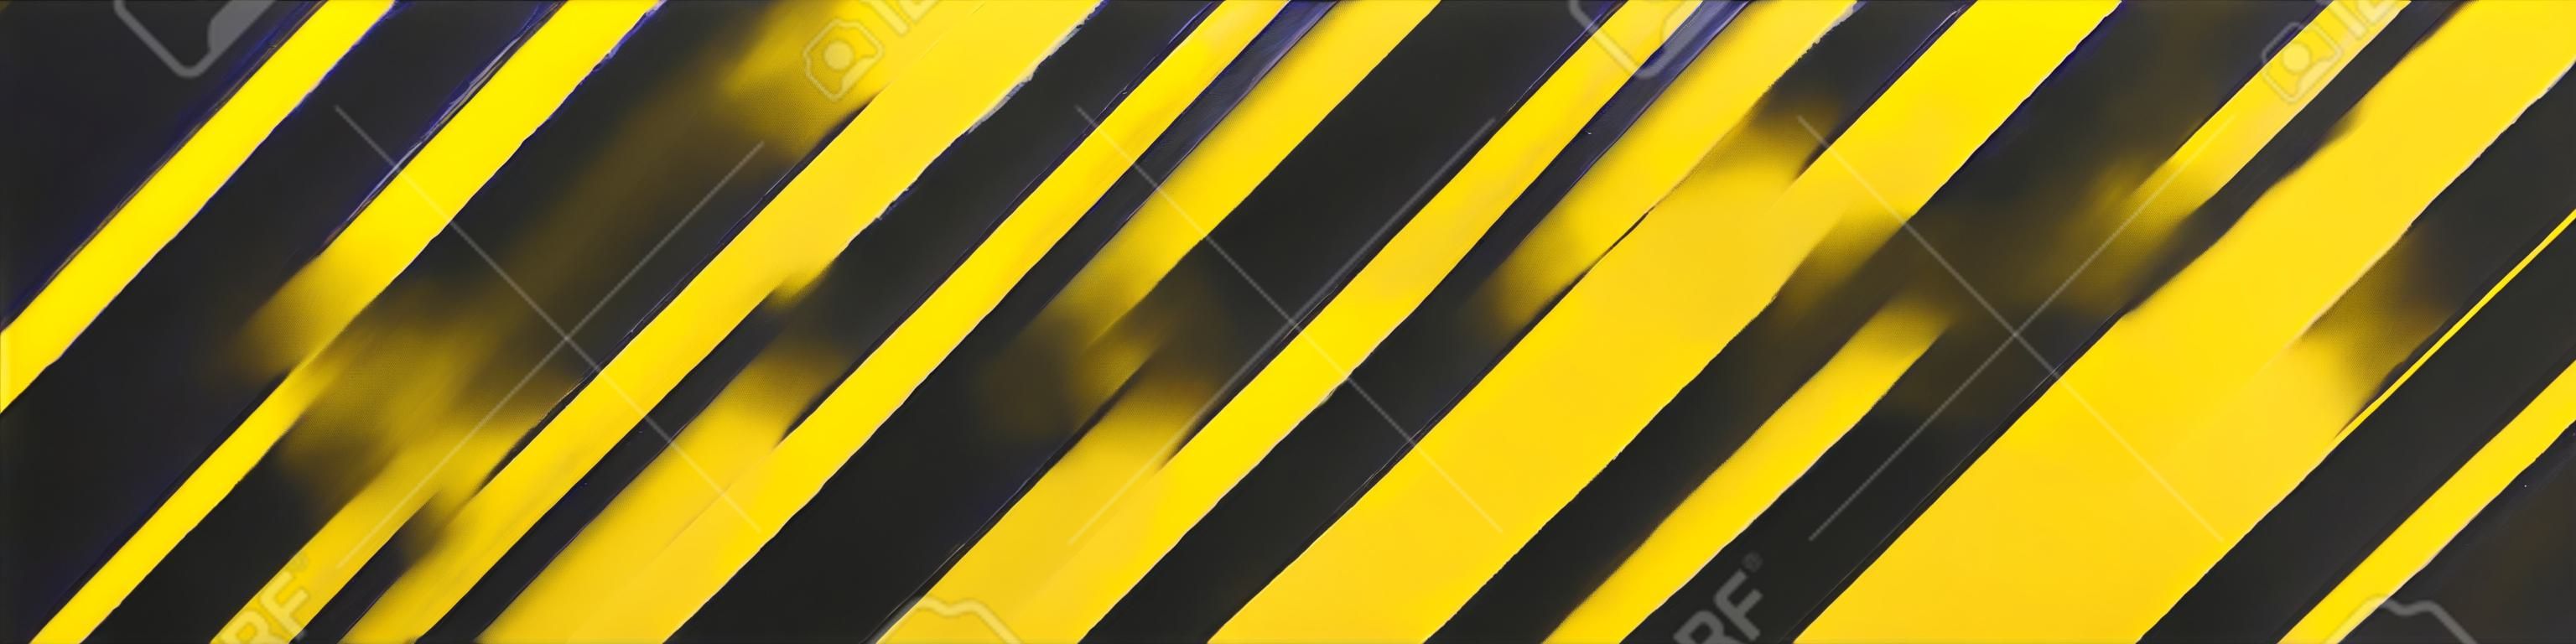 Illustration de rayures jaunes et noires. Un symbole de substances dangereuses et radioactives. L'échantillon est largement utilisé dans l'industrie. Illustration vectorielle.